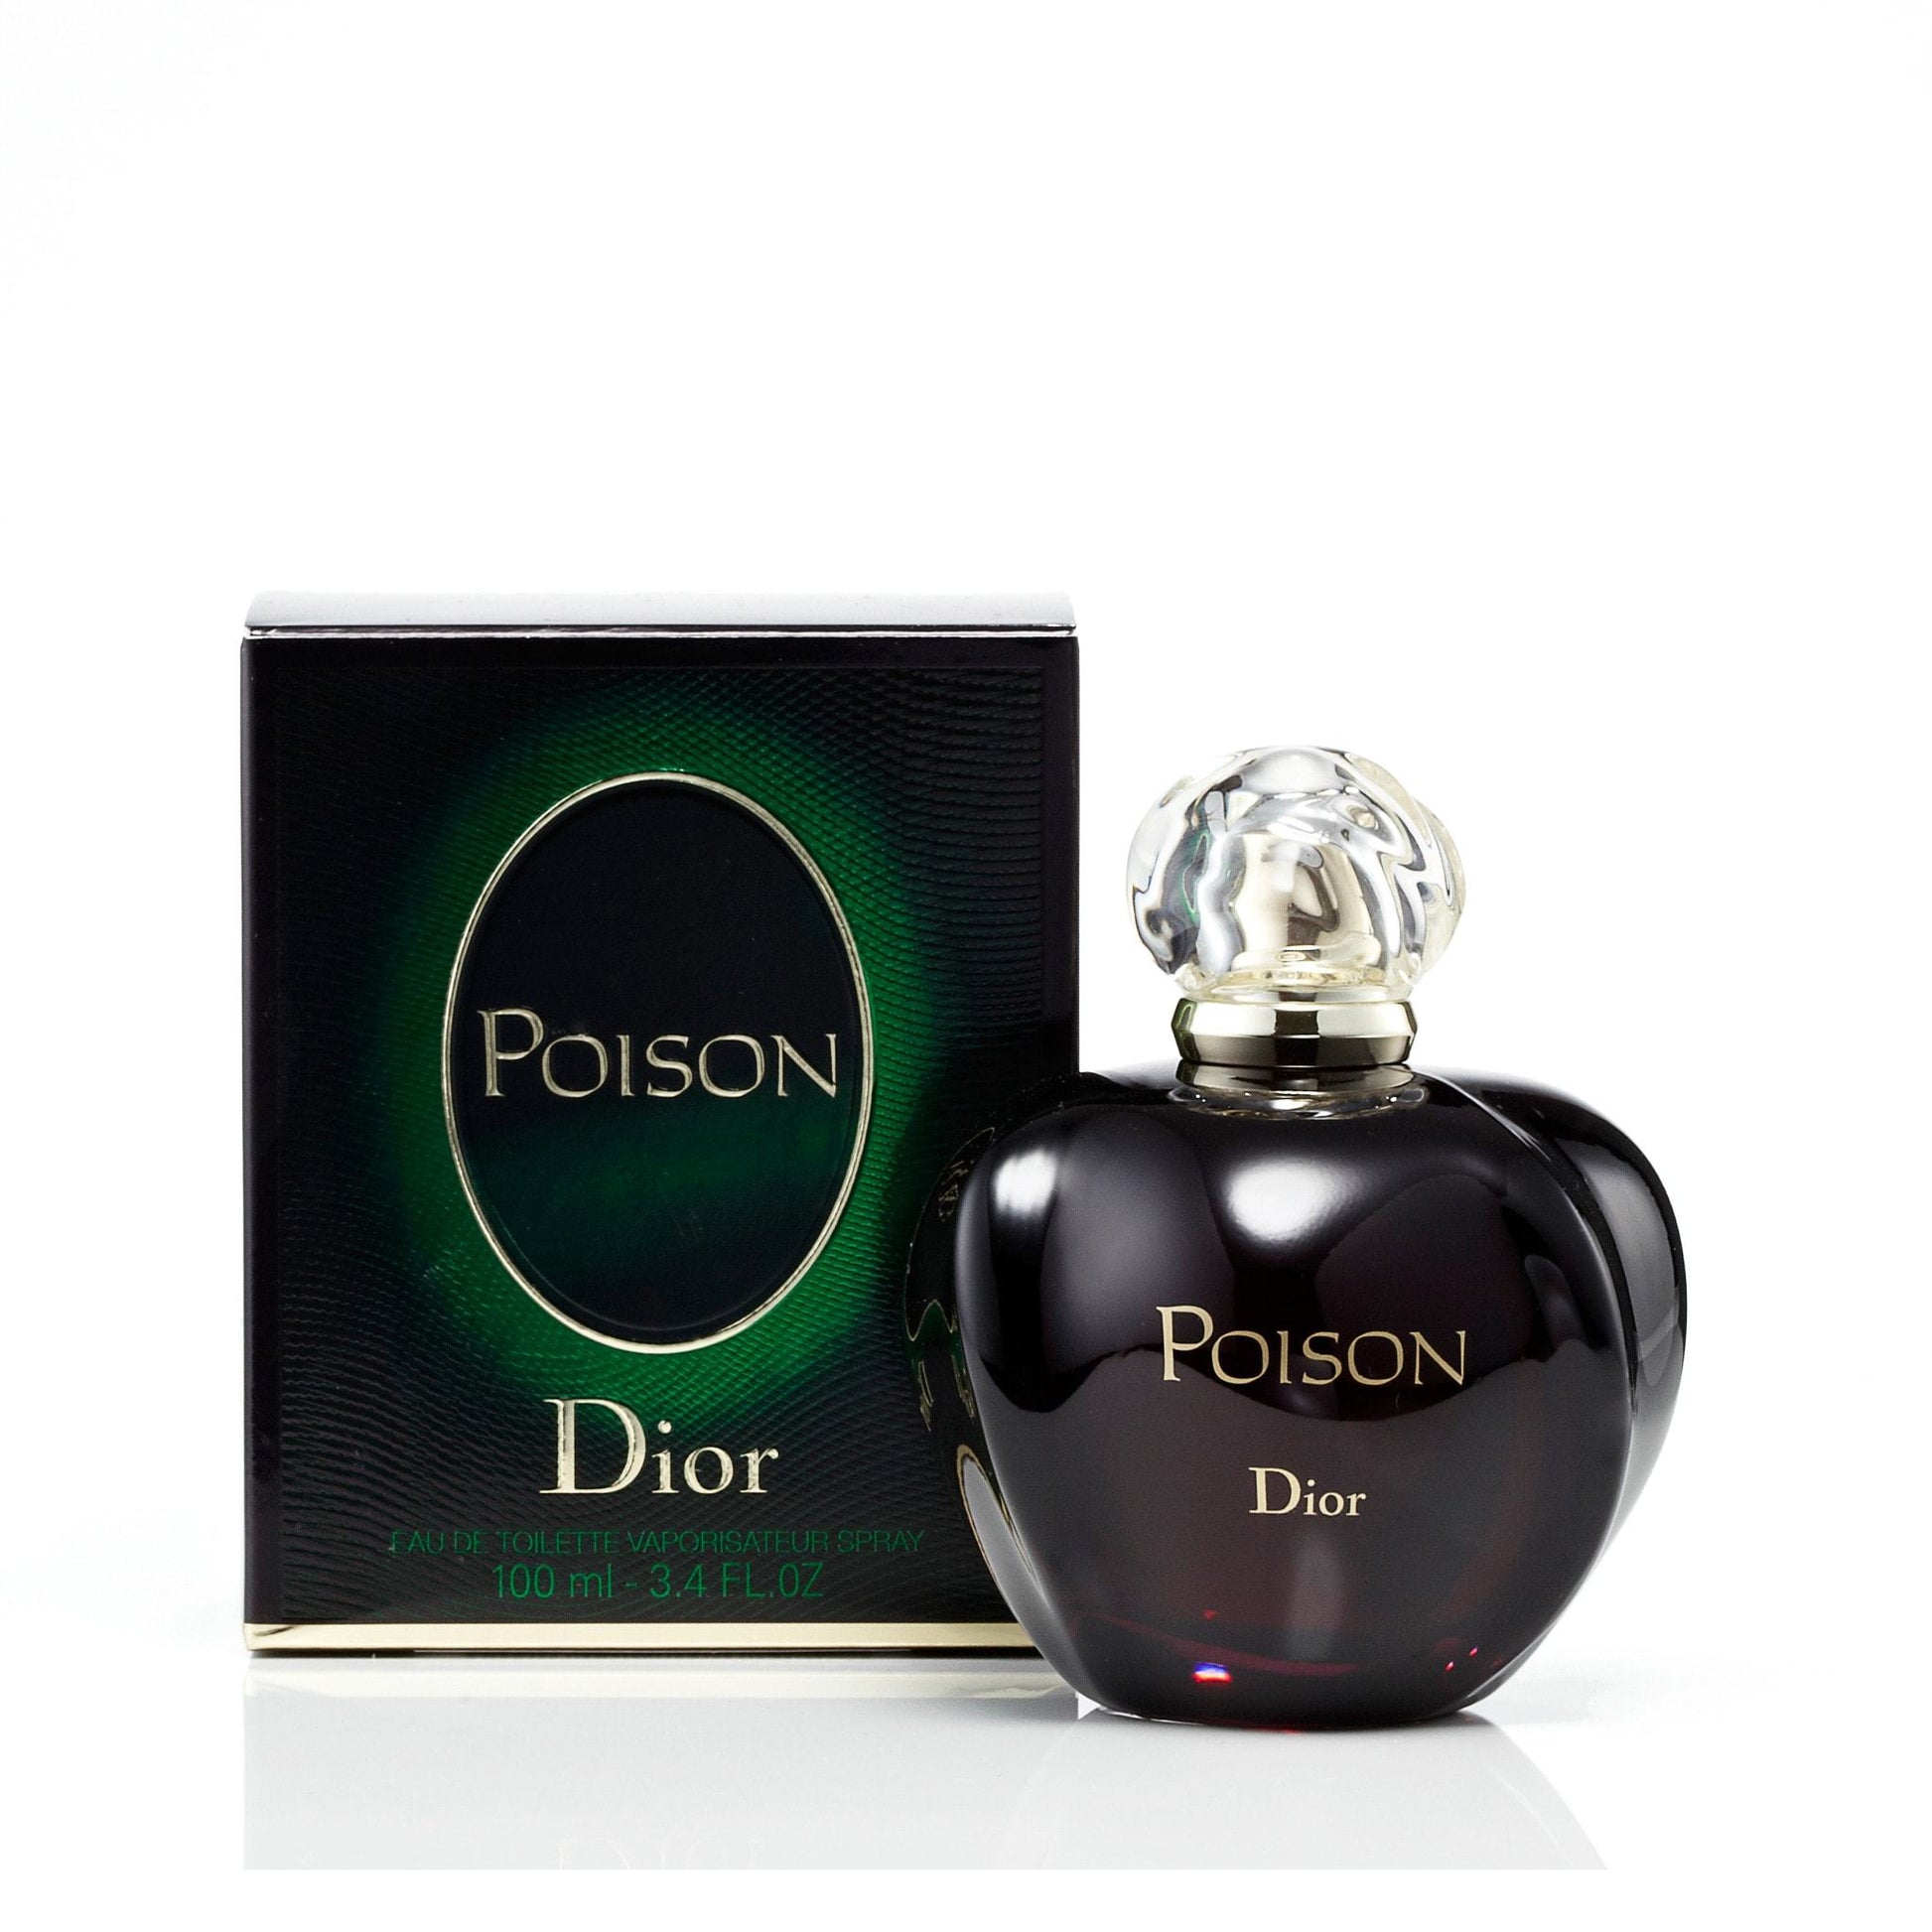 Poison Eau de Toilette Spray for Women by Dior, Product image 4